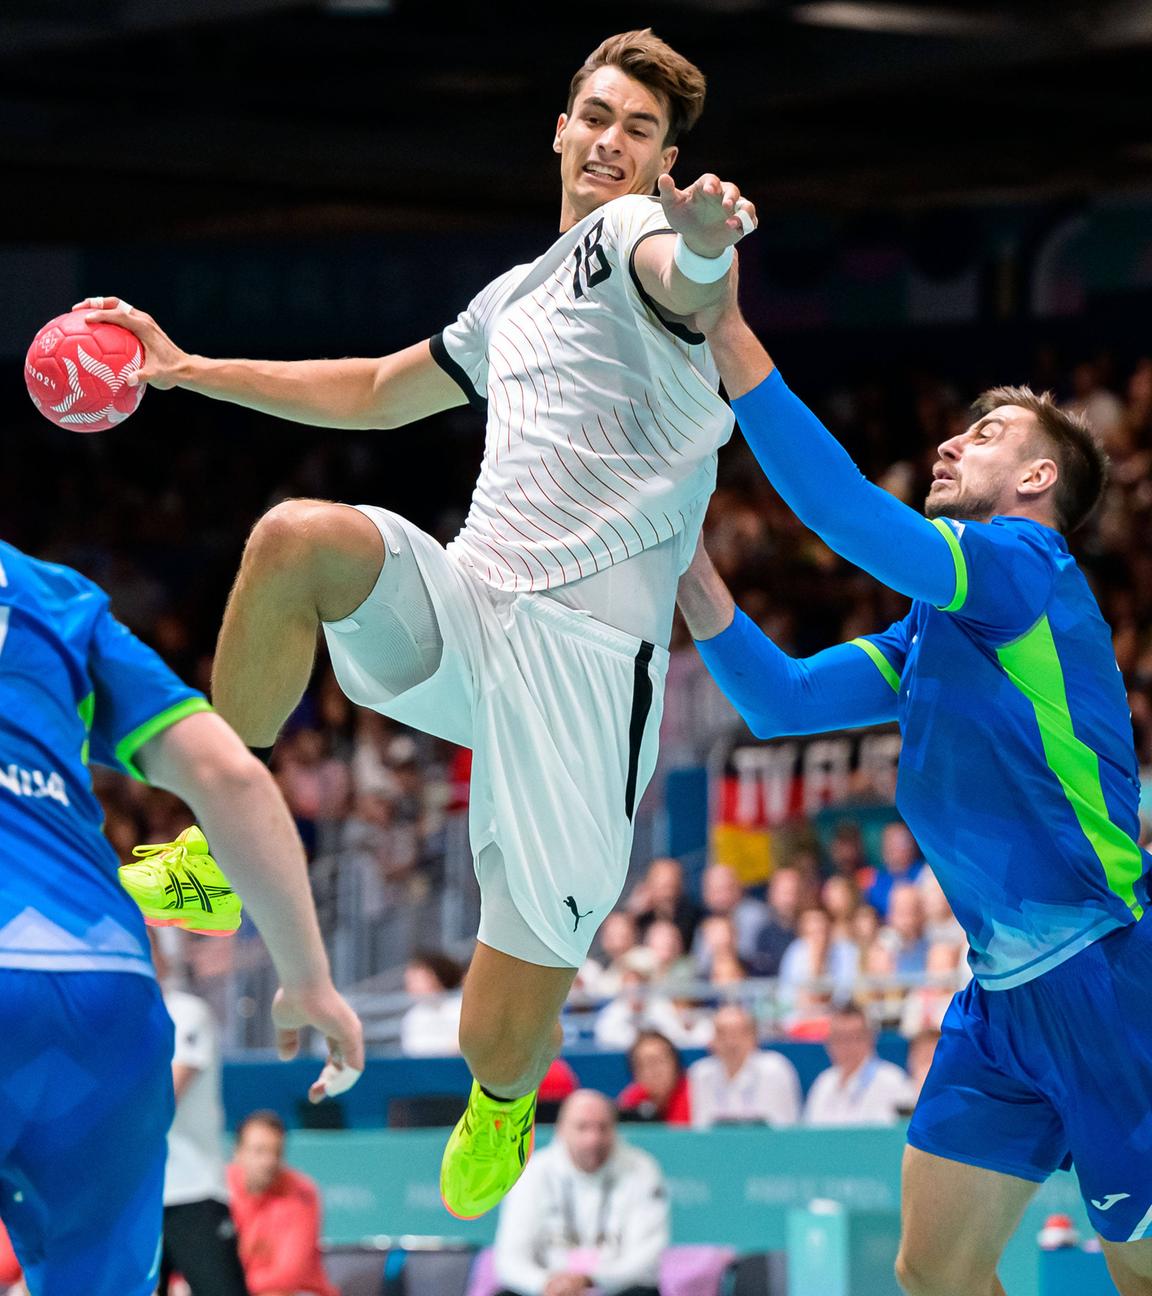 Der deutsche Handballer Julian Köster wirft auf das Slowenische Tor bei der Vorrunde des Herren Handball.